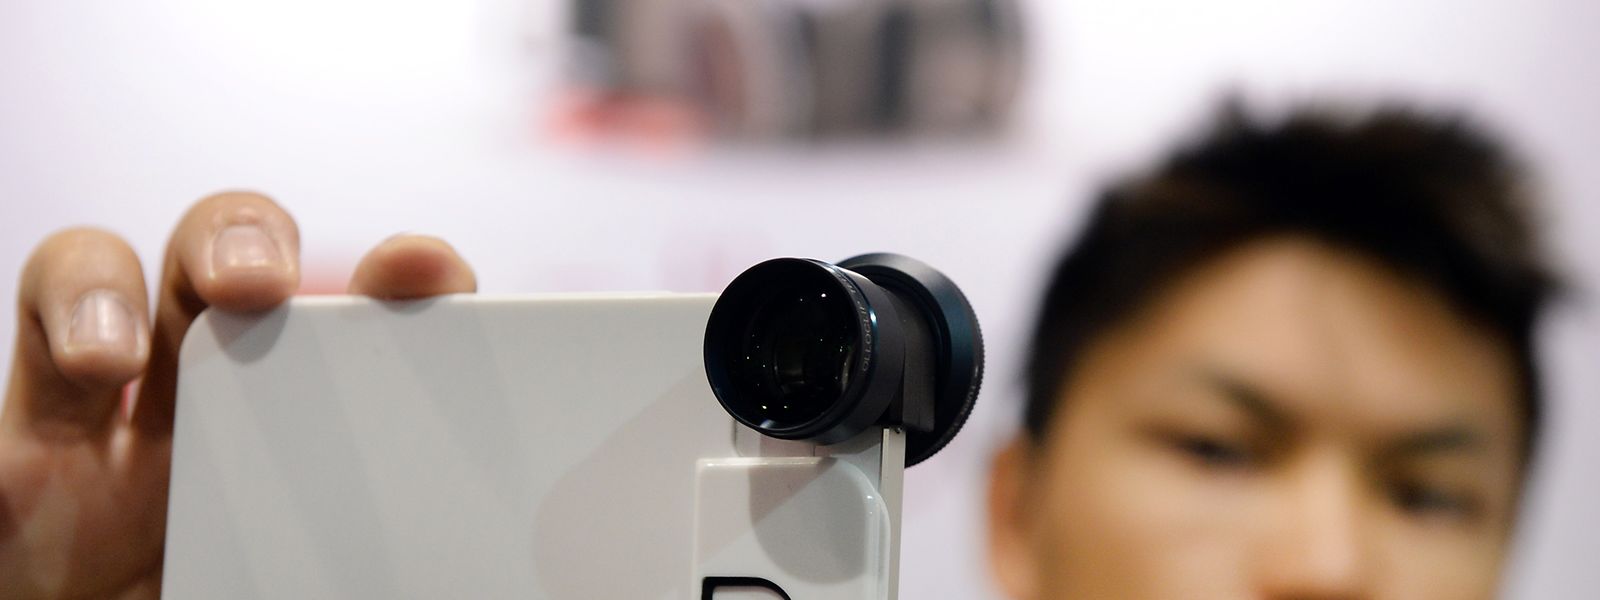 Anstecklinsen statt großer Kameraobjektive: Mit solchen Gadgets kann die Smartphonekamera leicht aufgerüstet werden. 
